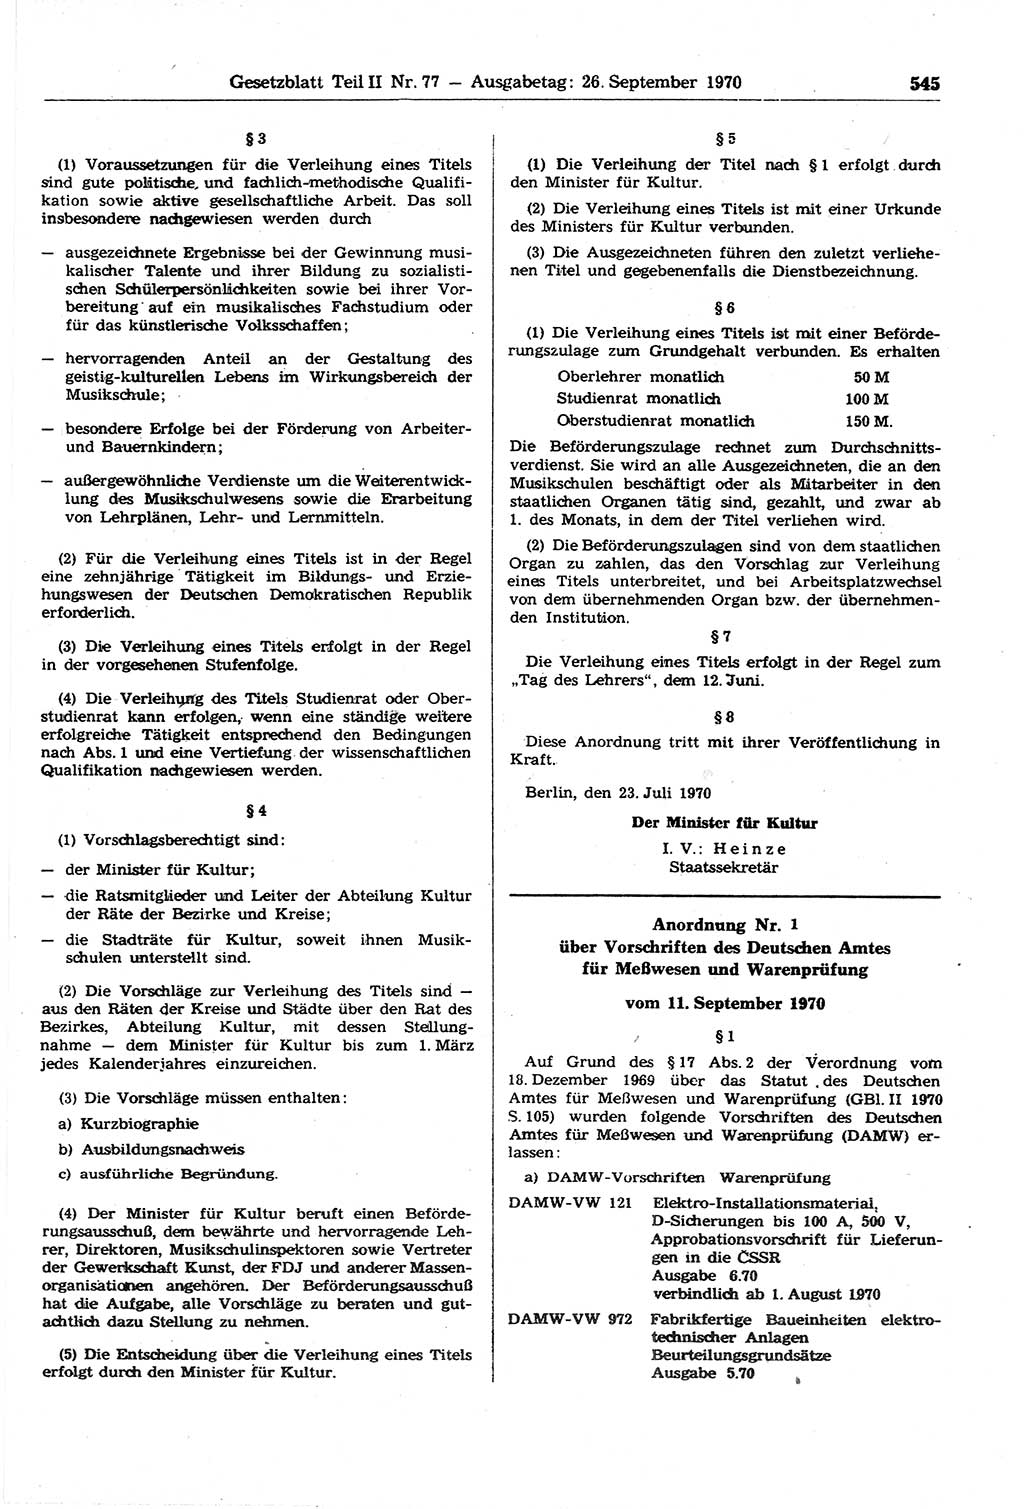 Gesetzblatt (GBl.) der Deutschen Demokratischen Republik (DDR) Teil ⅠⅠ 1970, Seite 545 (GBl. DDR ⅠⅠ 1970, S. 545)